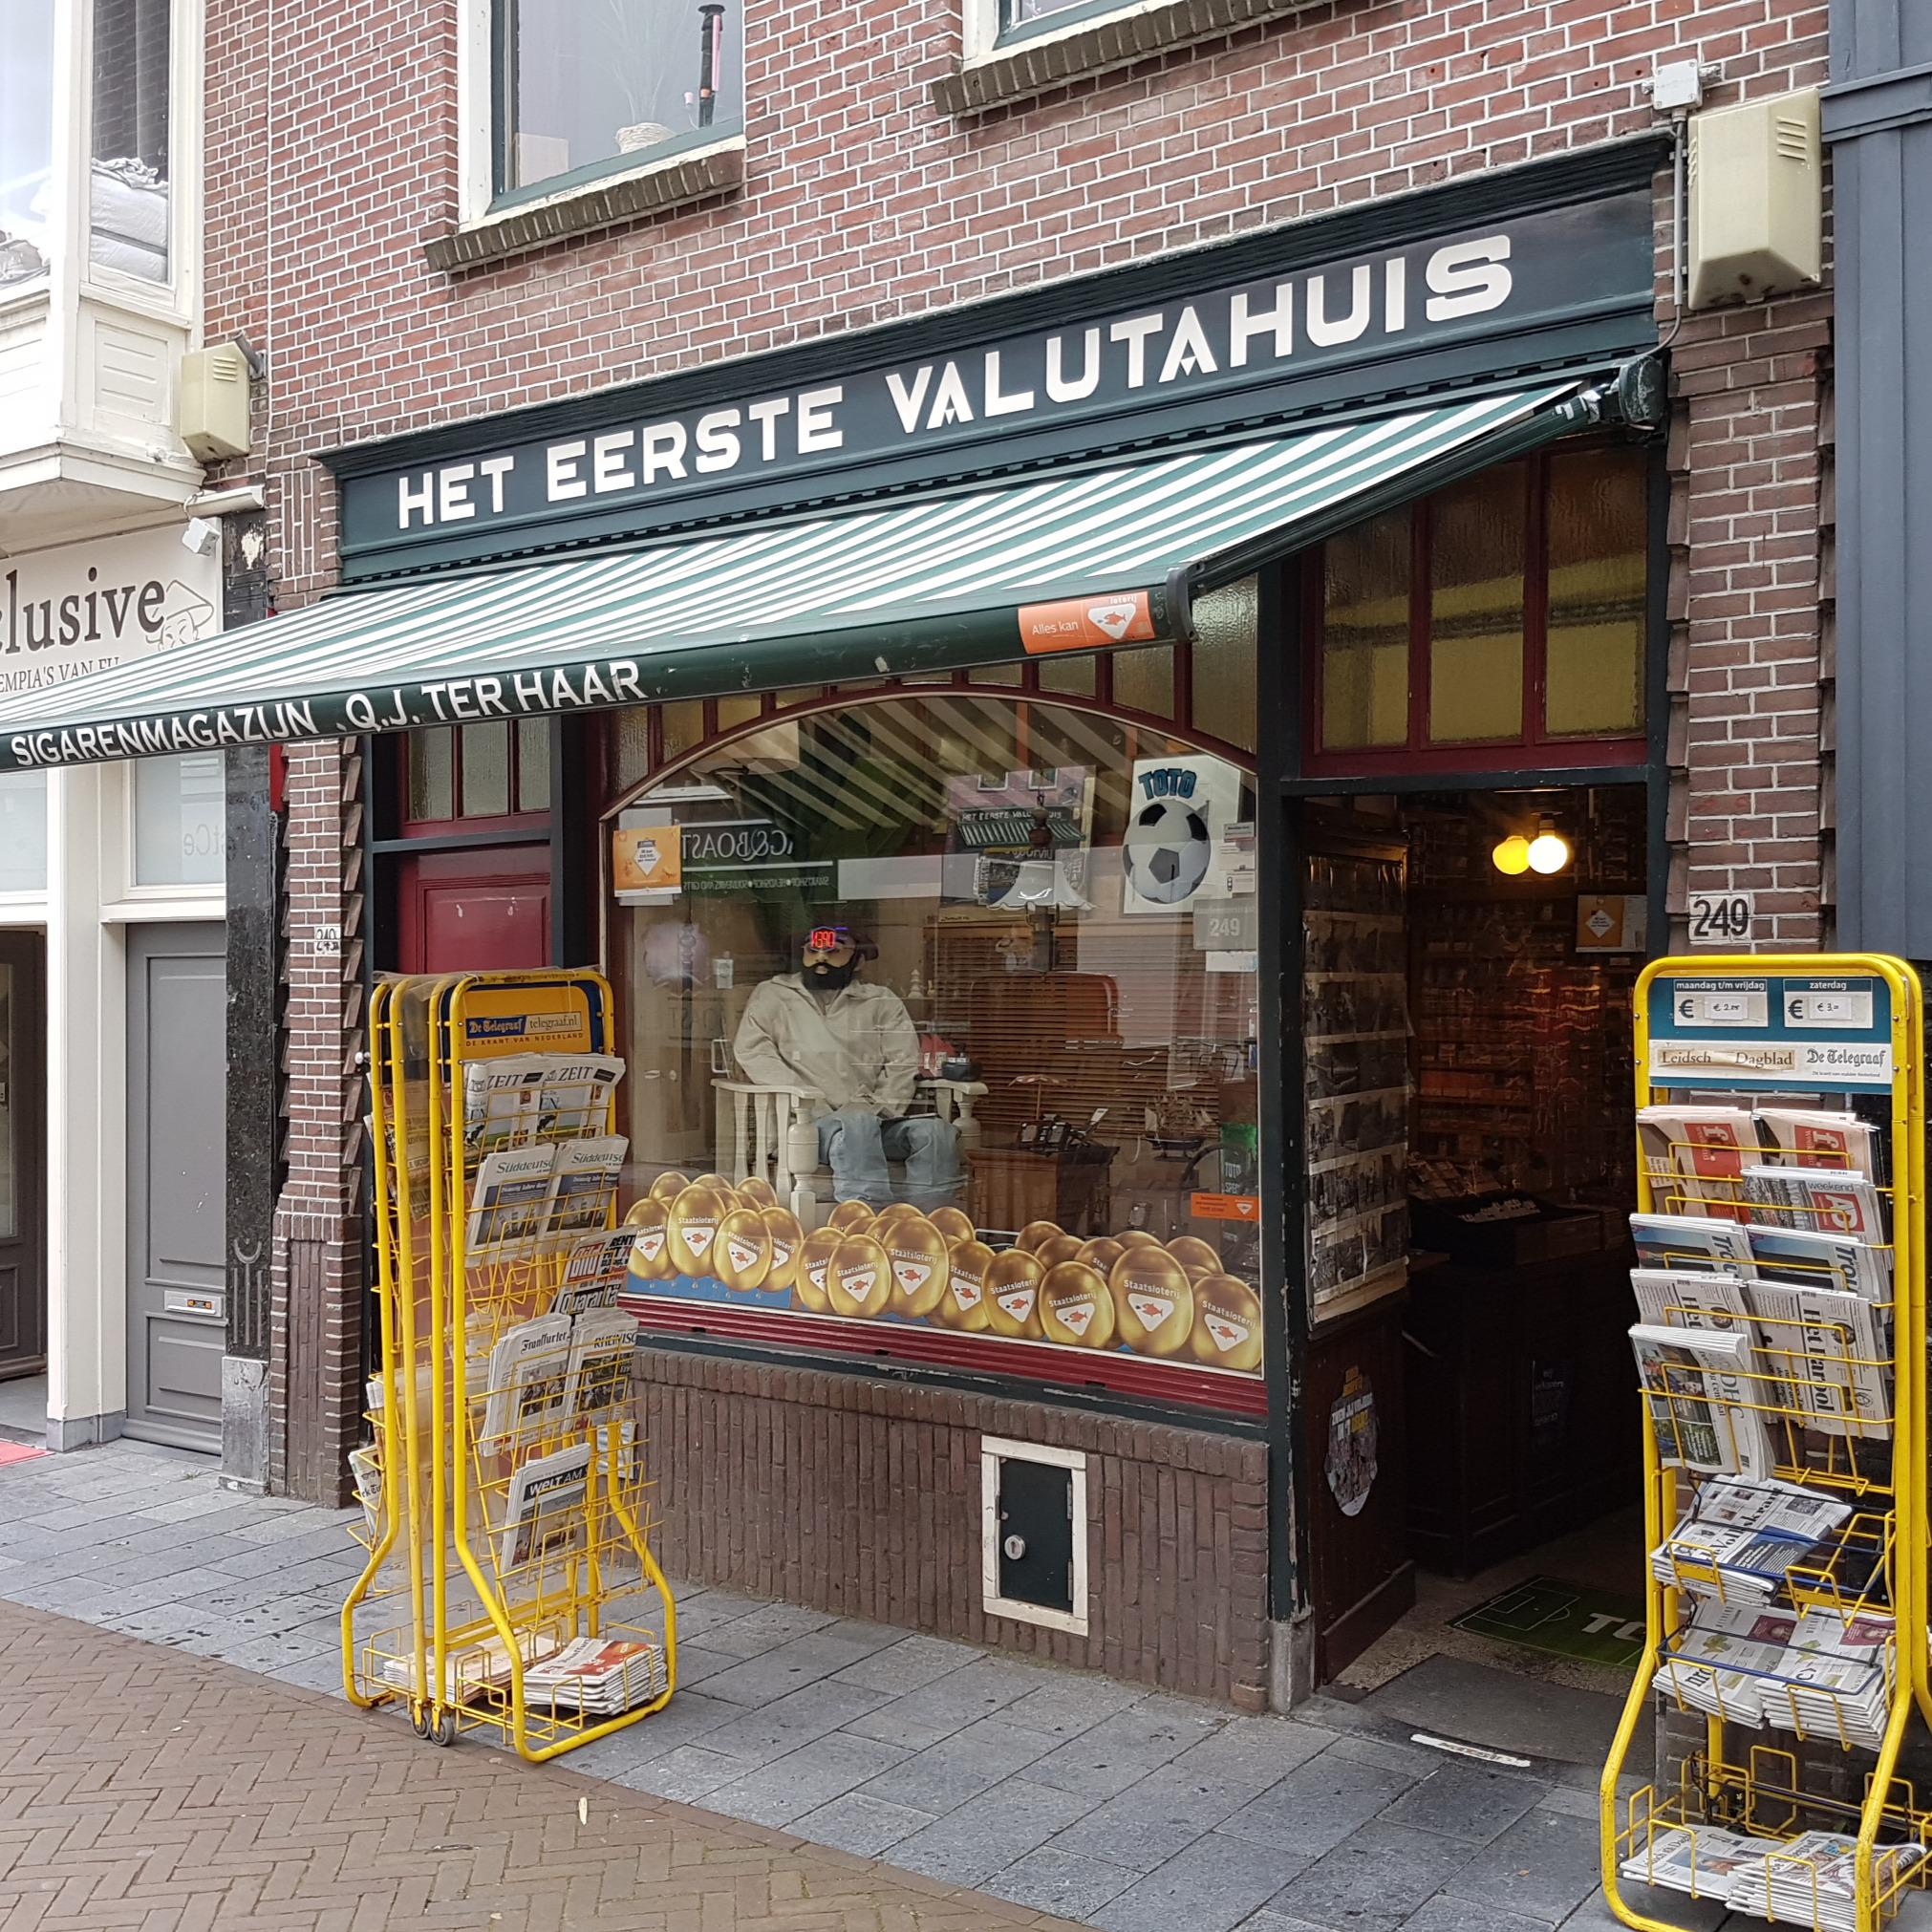 Haar Sigarenmagazijn Q J ter - Het Eerste Valutahuis - Tobacco Shop - Leiden - 071 513 0380 Netherlands | ShowMeLocal.com